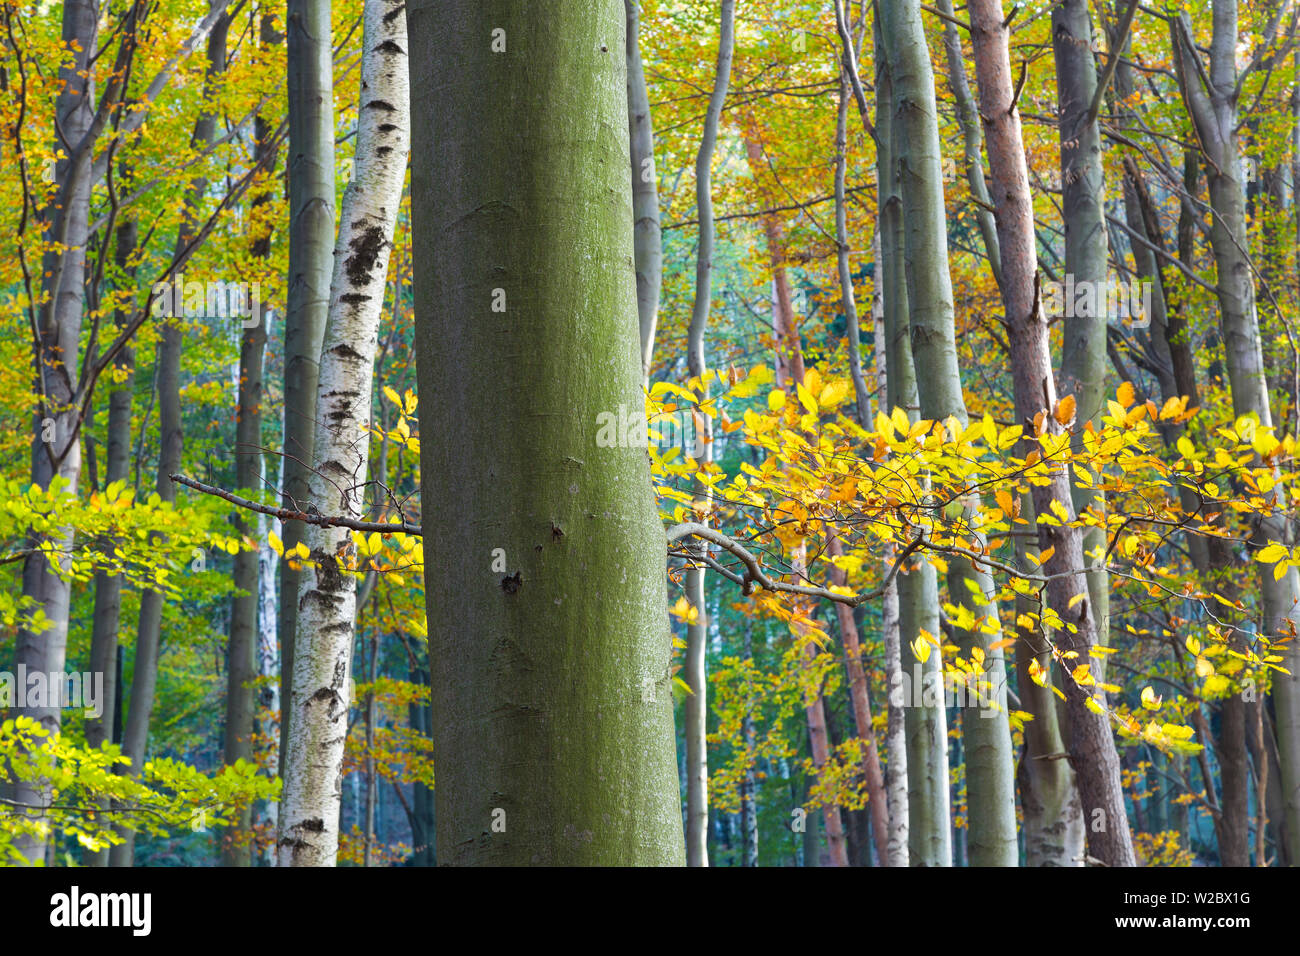 Les arbres d'automne, la Suisse Saxonne, Allemagne Banque D'Images